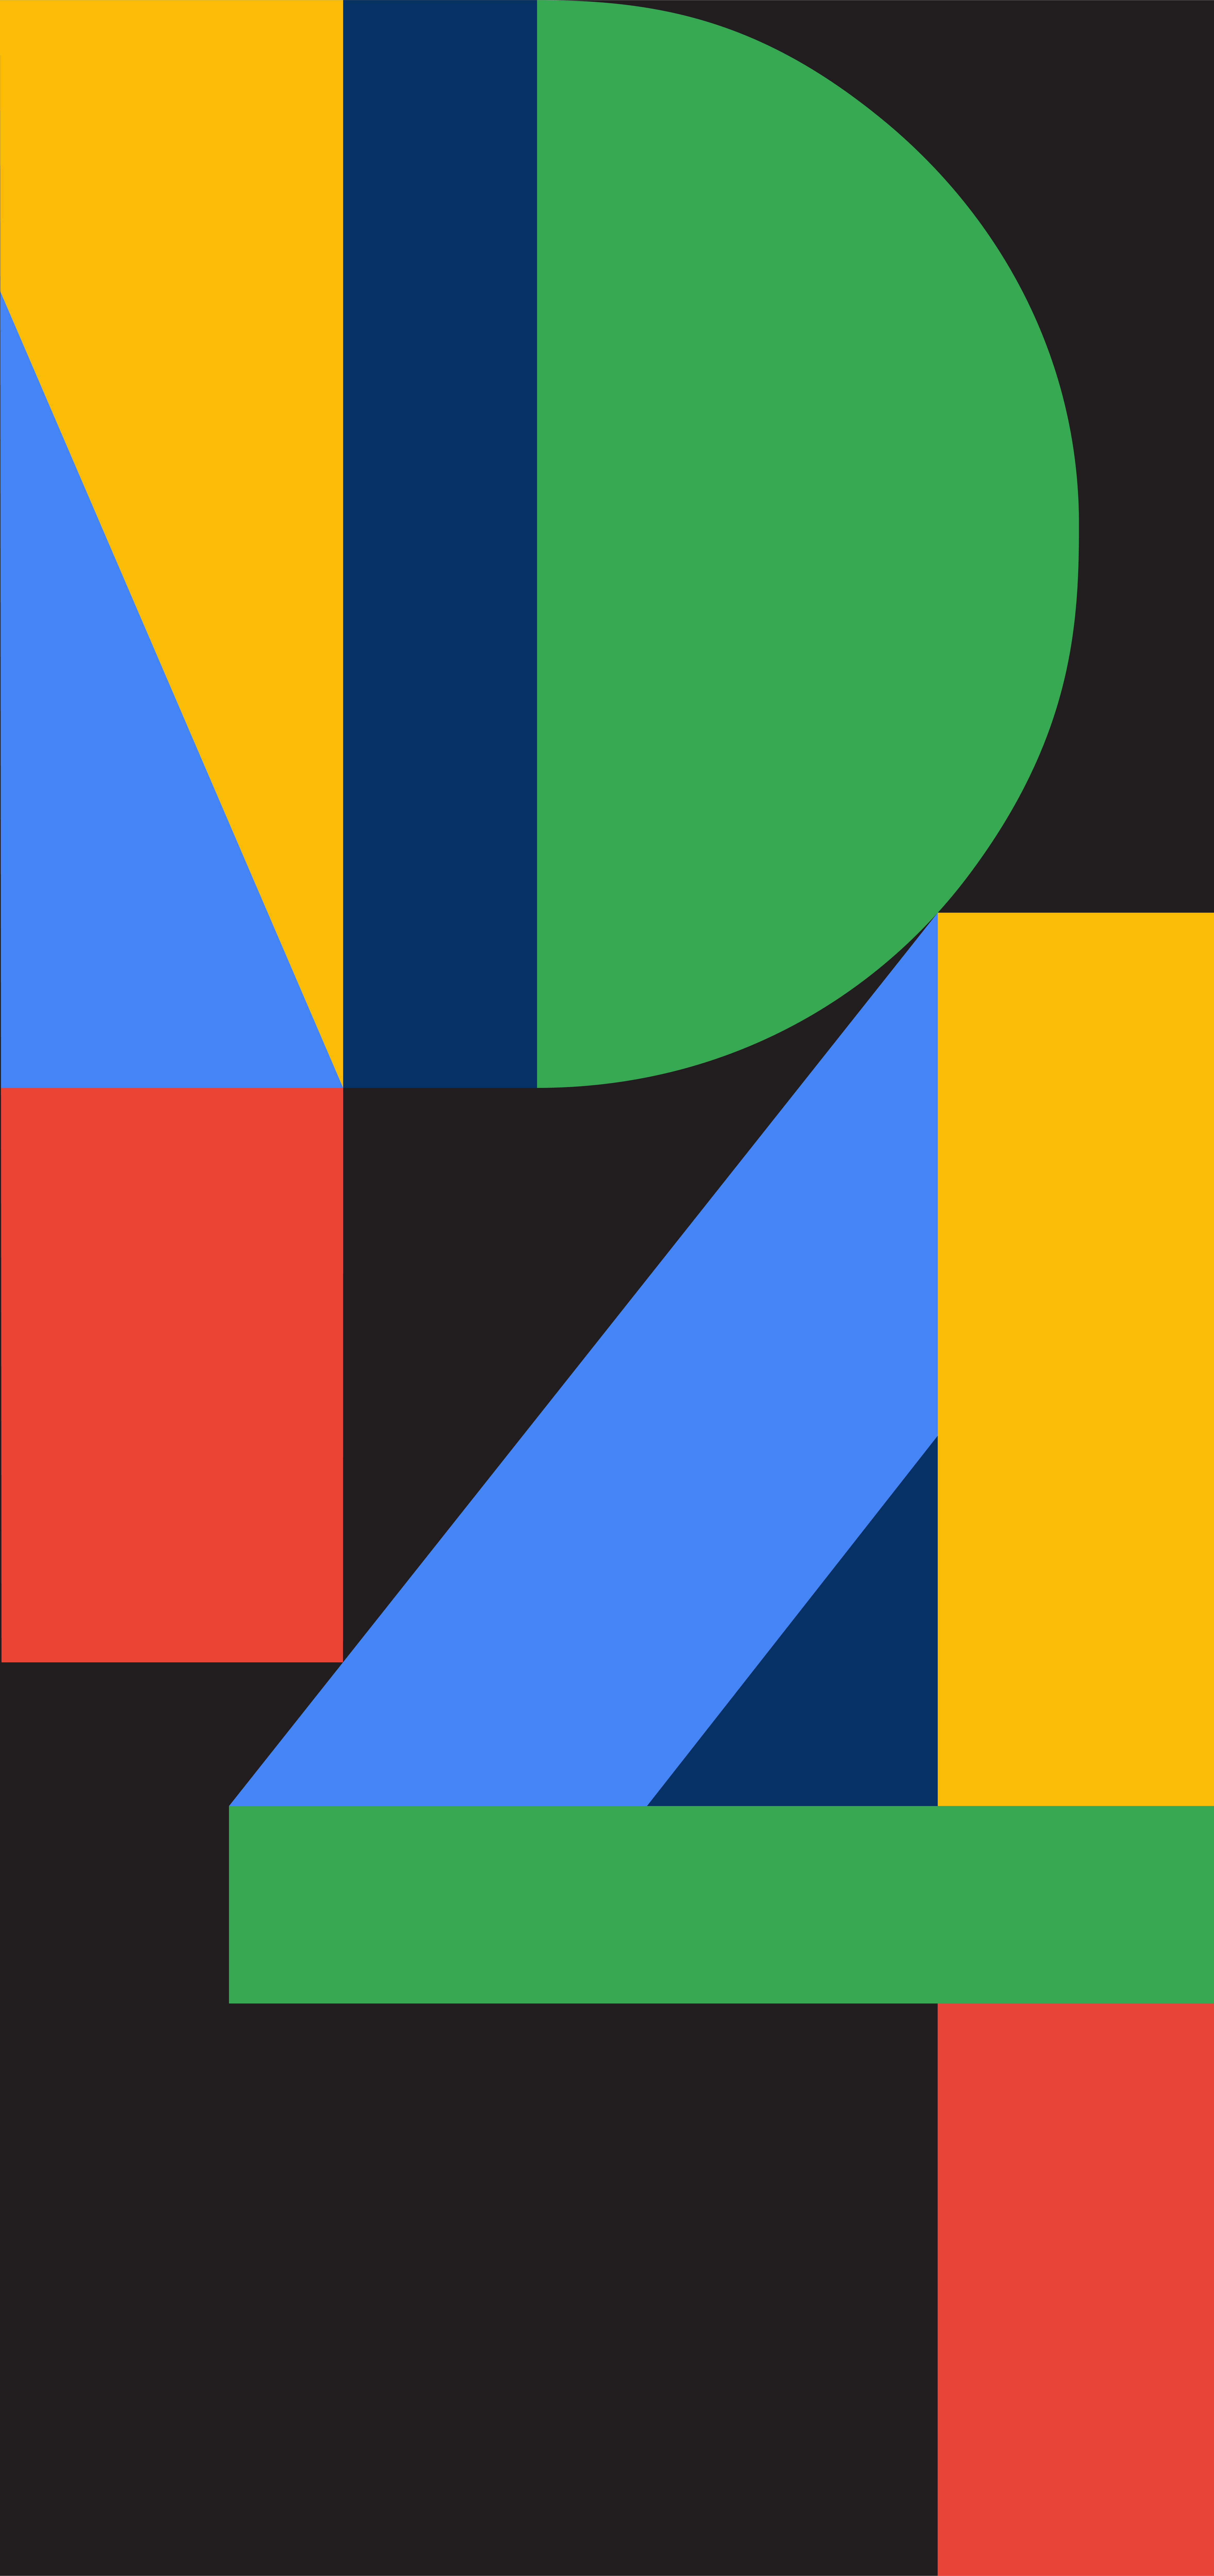 Download free Pixel 4 Google Default Wallpaper - MrWallpaper.com